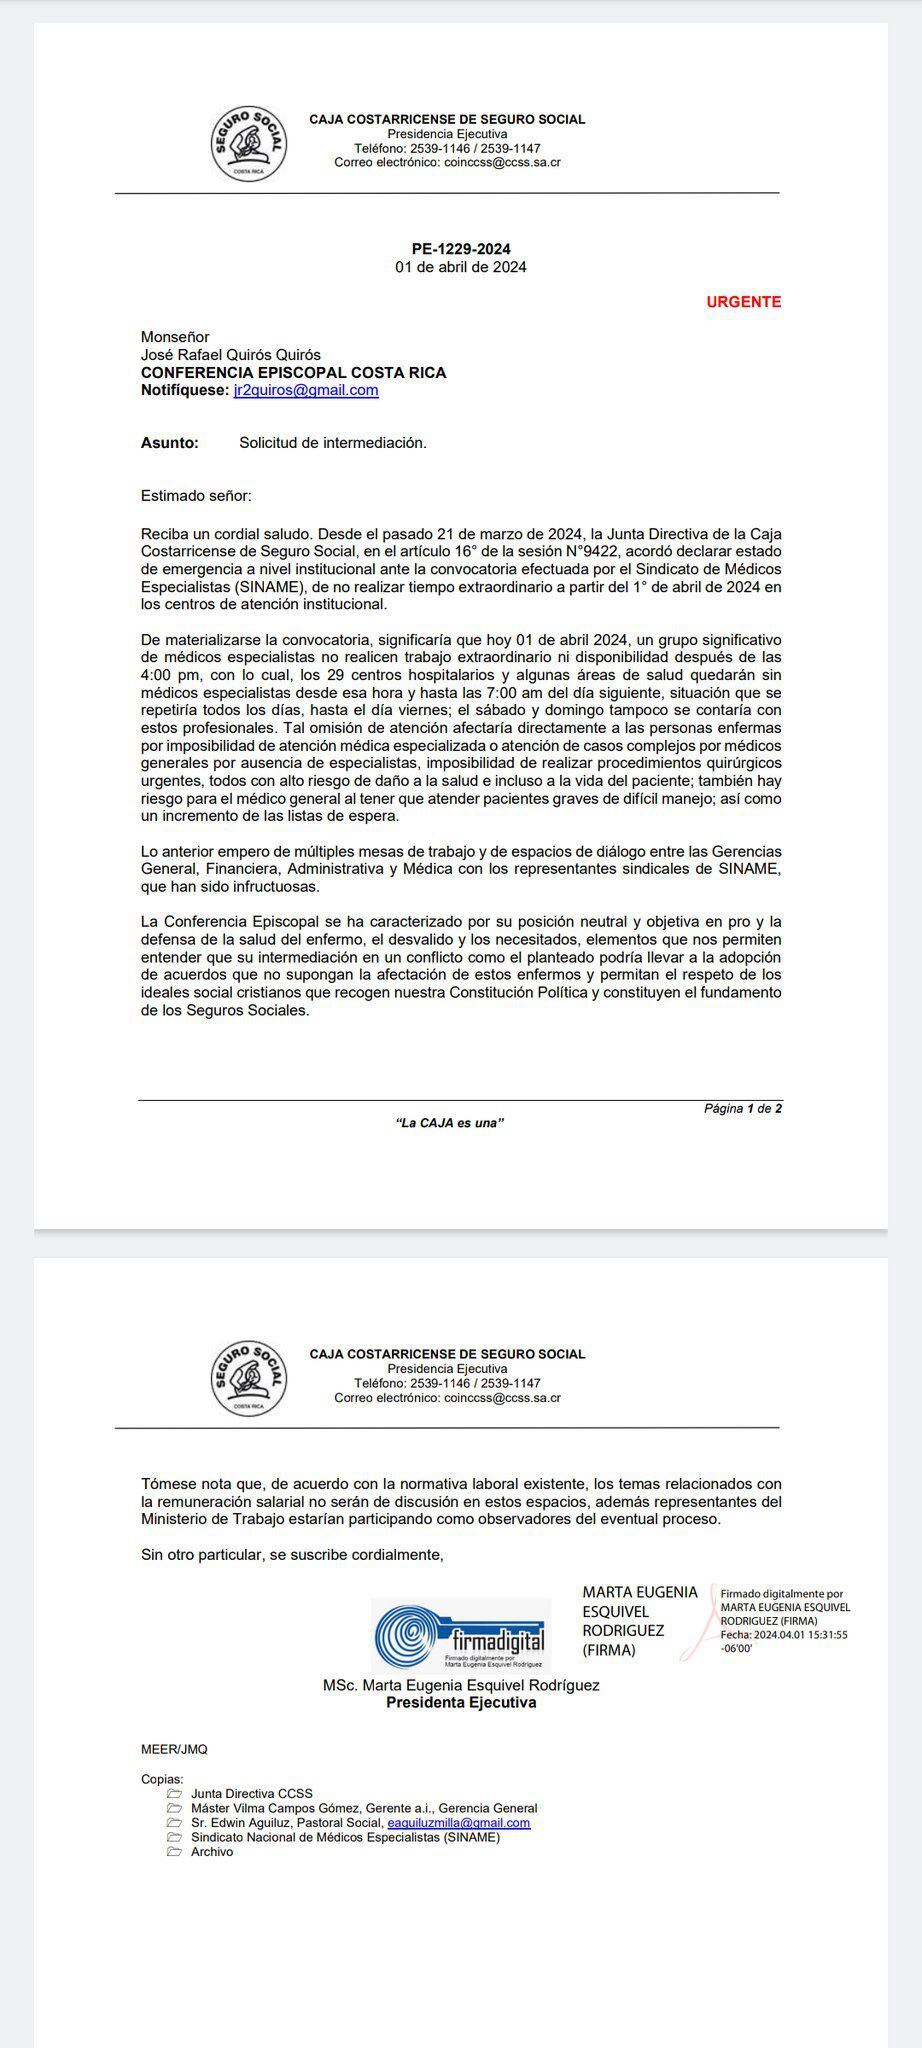 Esta es la solicitud de mediación presentada por la CCSS para pedir mediación de la Iglesia en la situación de los médicos especialistas.